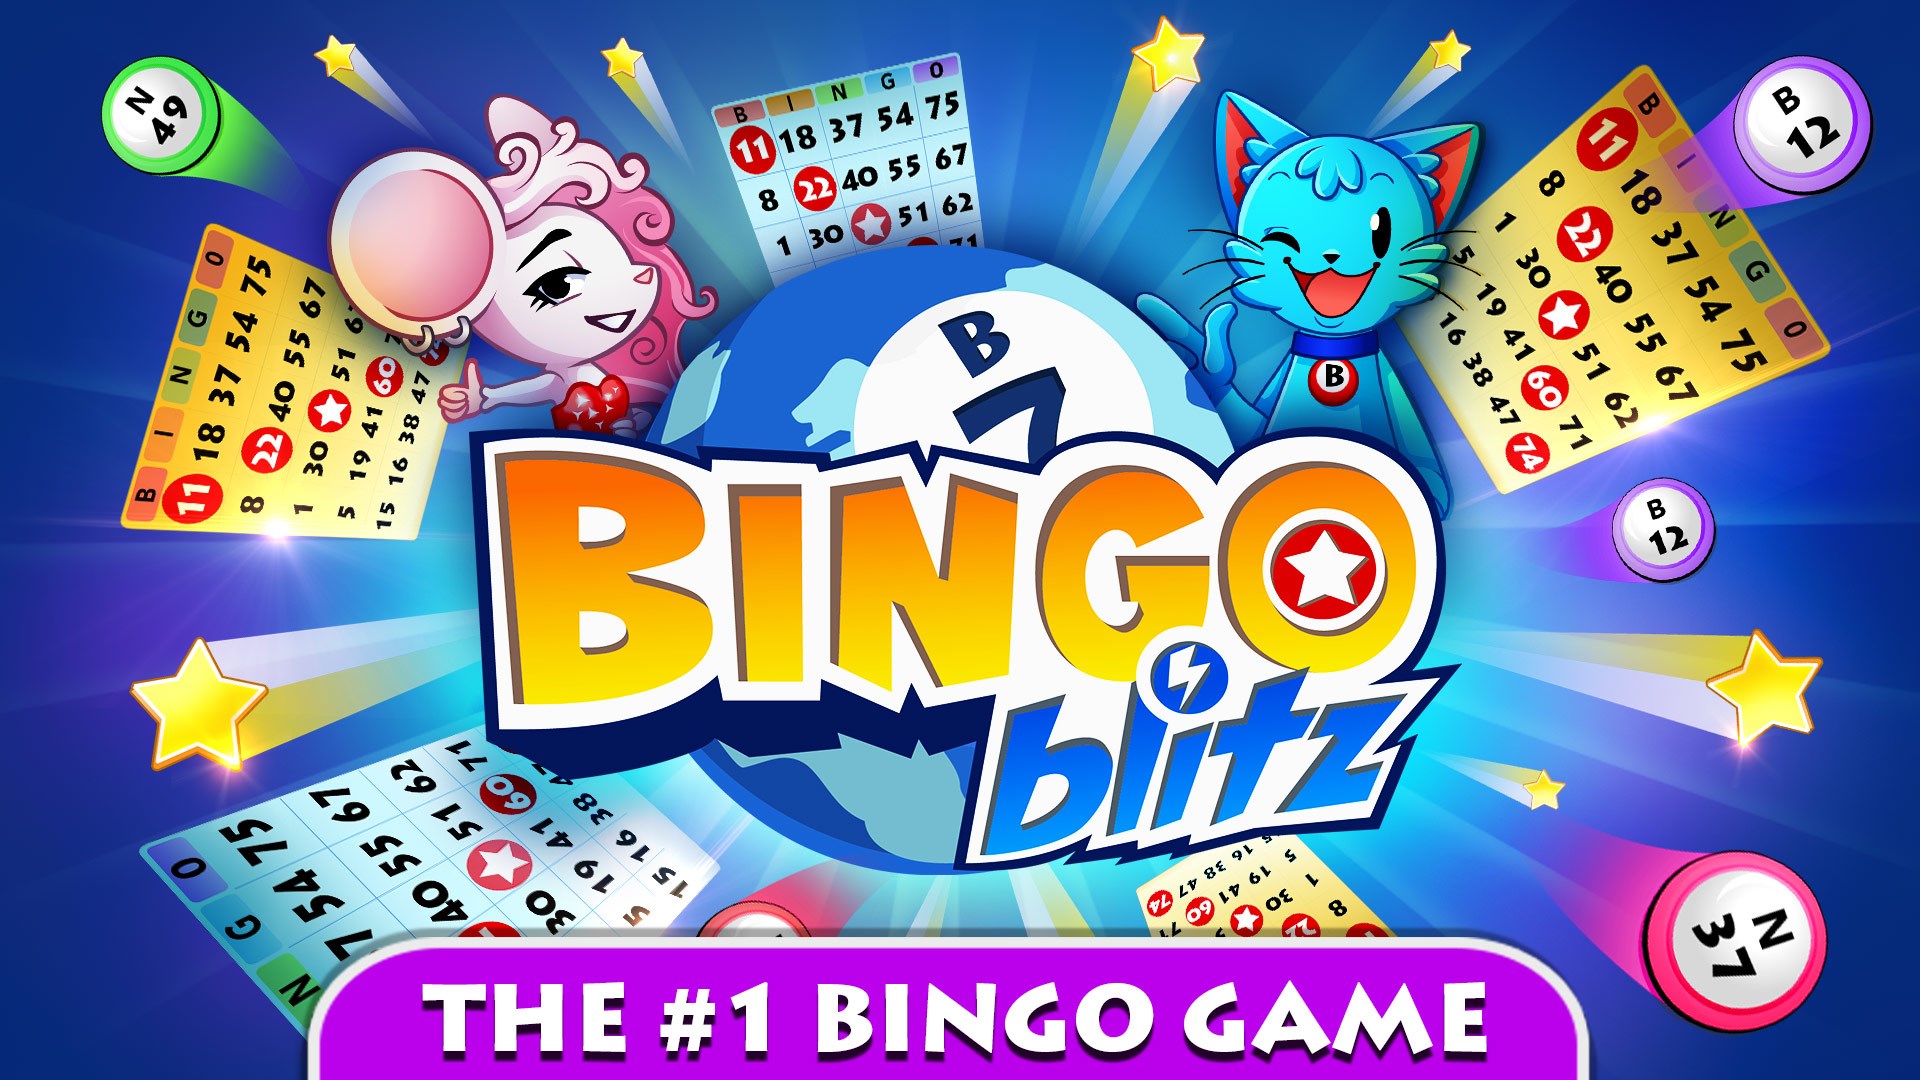 Open Bingo Blitz